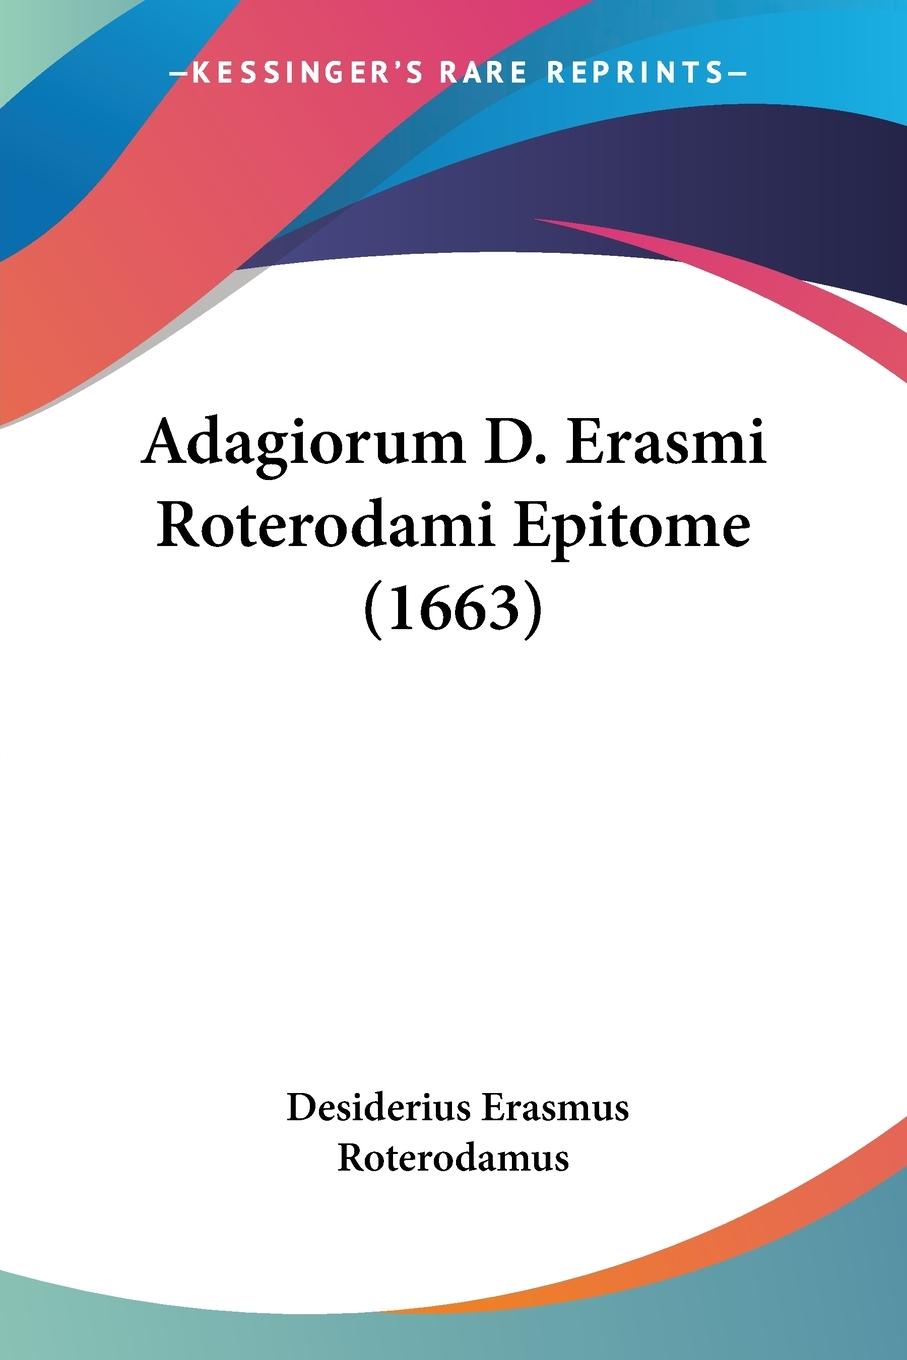 Adagiorum D. Erasmi Roterodami Epitome (1663) - Roterodamus, Desiderius Erasmus